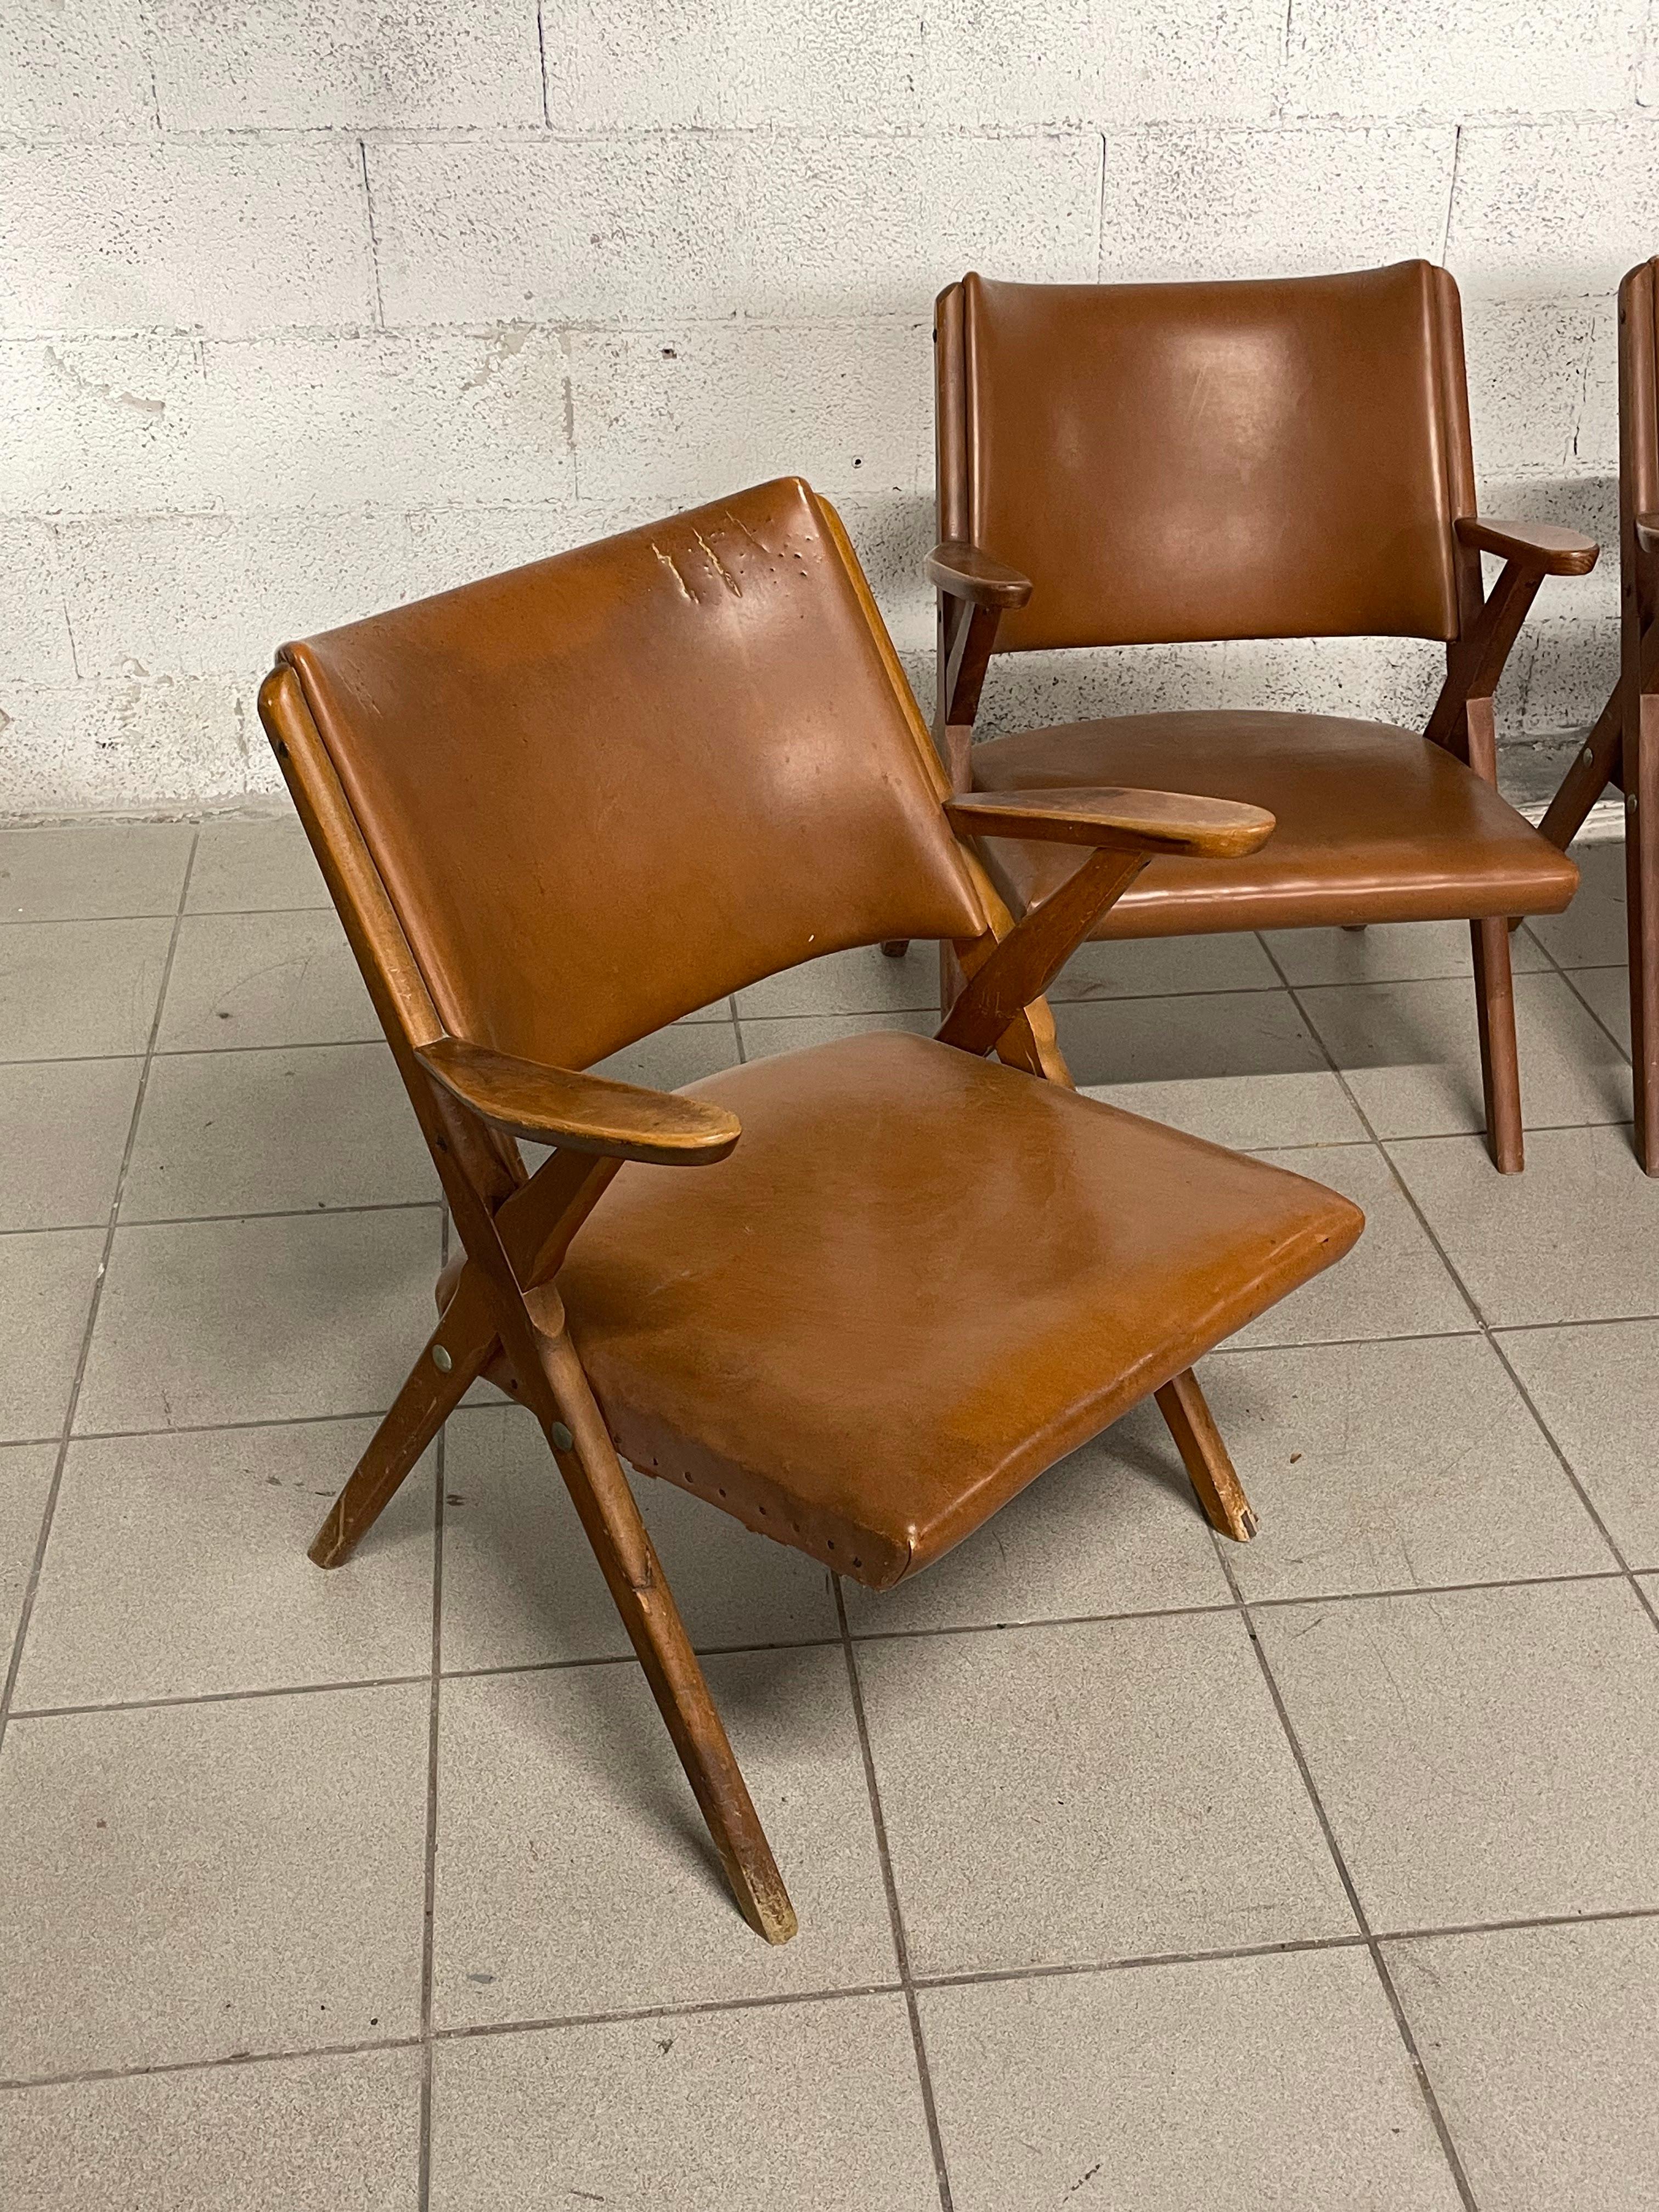 Satz von vier Sesseln aus den 1960er Jahren im skandinavischen Design, hergestellt von der historischen Möbelfabrik DAL VERA in Conegliano Veneto (Italien) und entworfen von Antonio Dal Vera selbst.

Sie sind aus Massivholz gefertigt und mit braunem